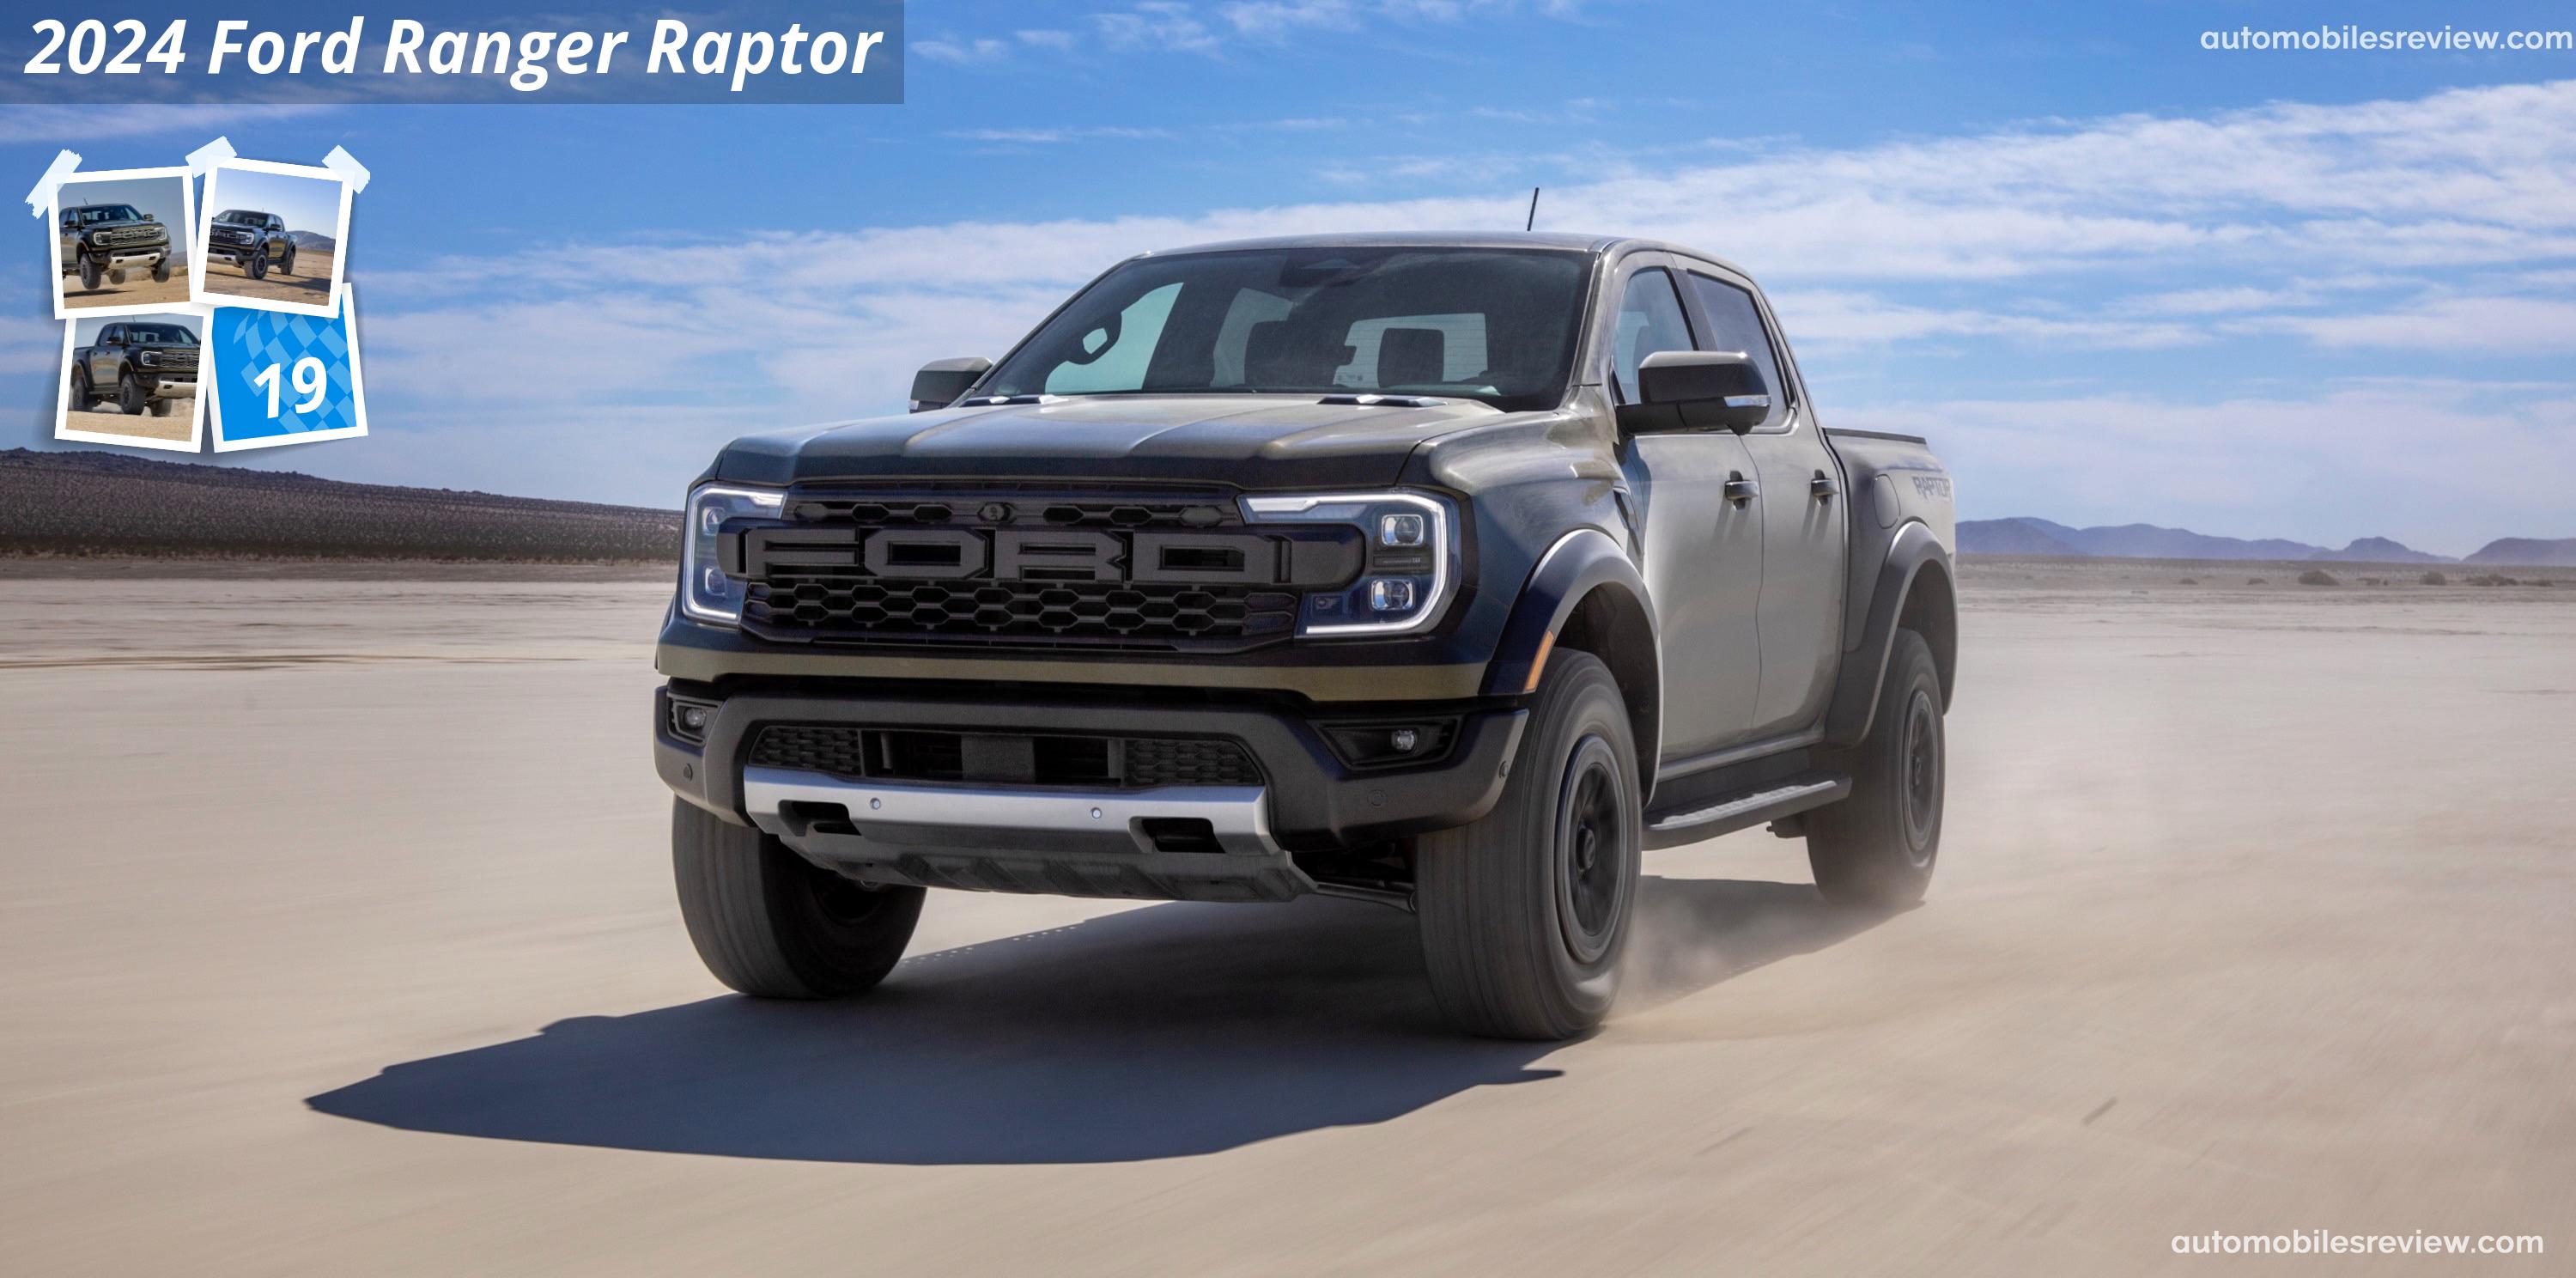 Ford Ranger Raptor (2024) pictures & information